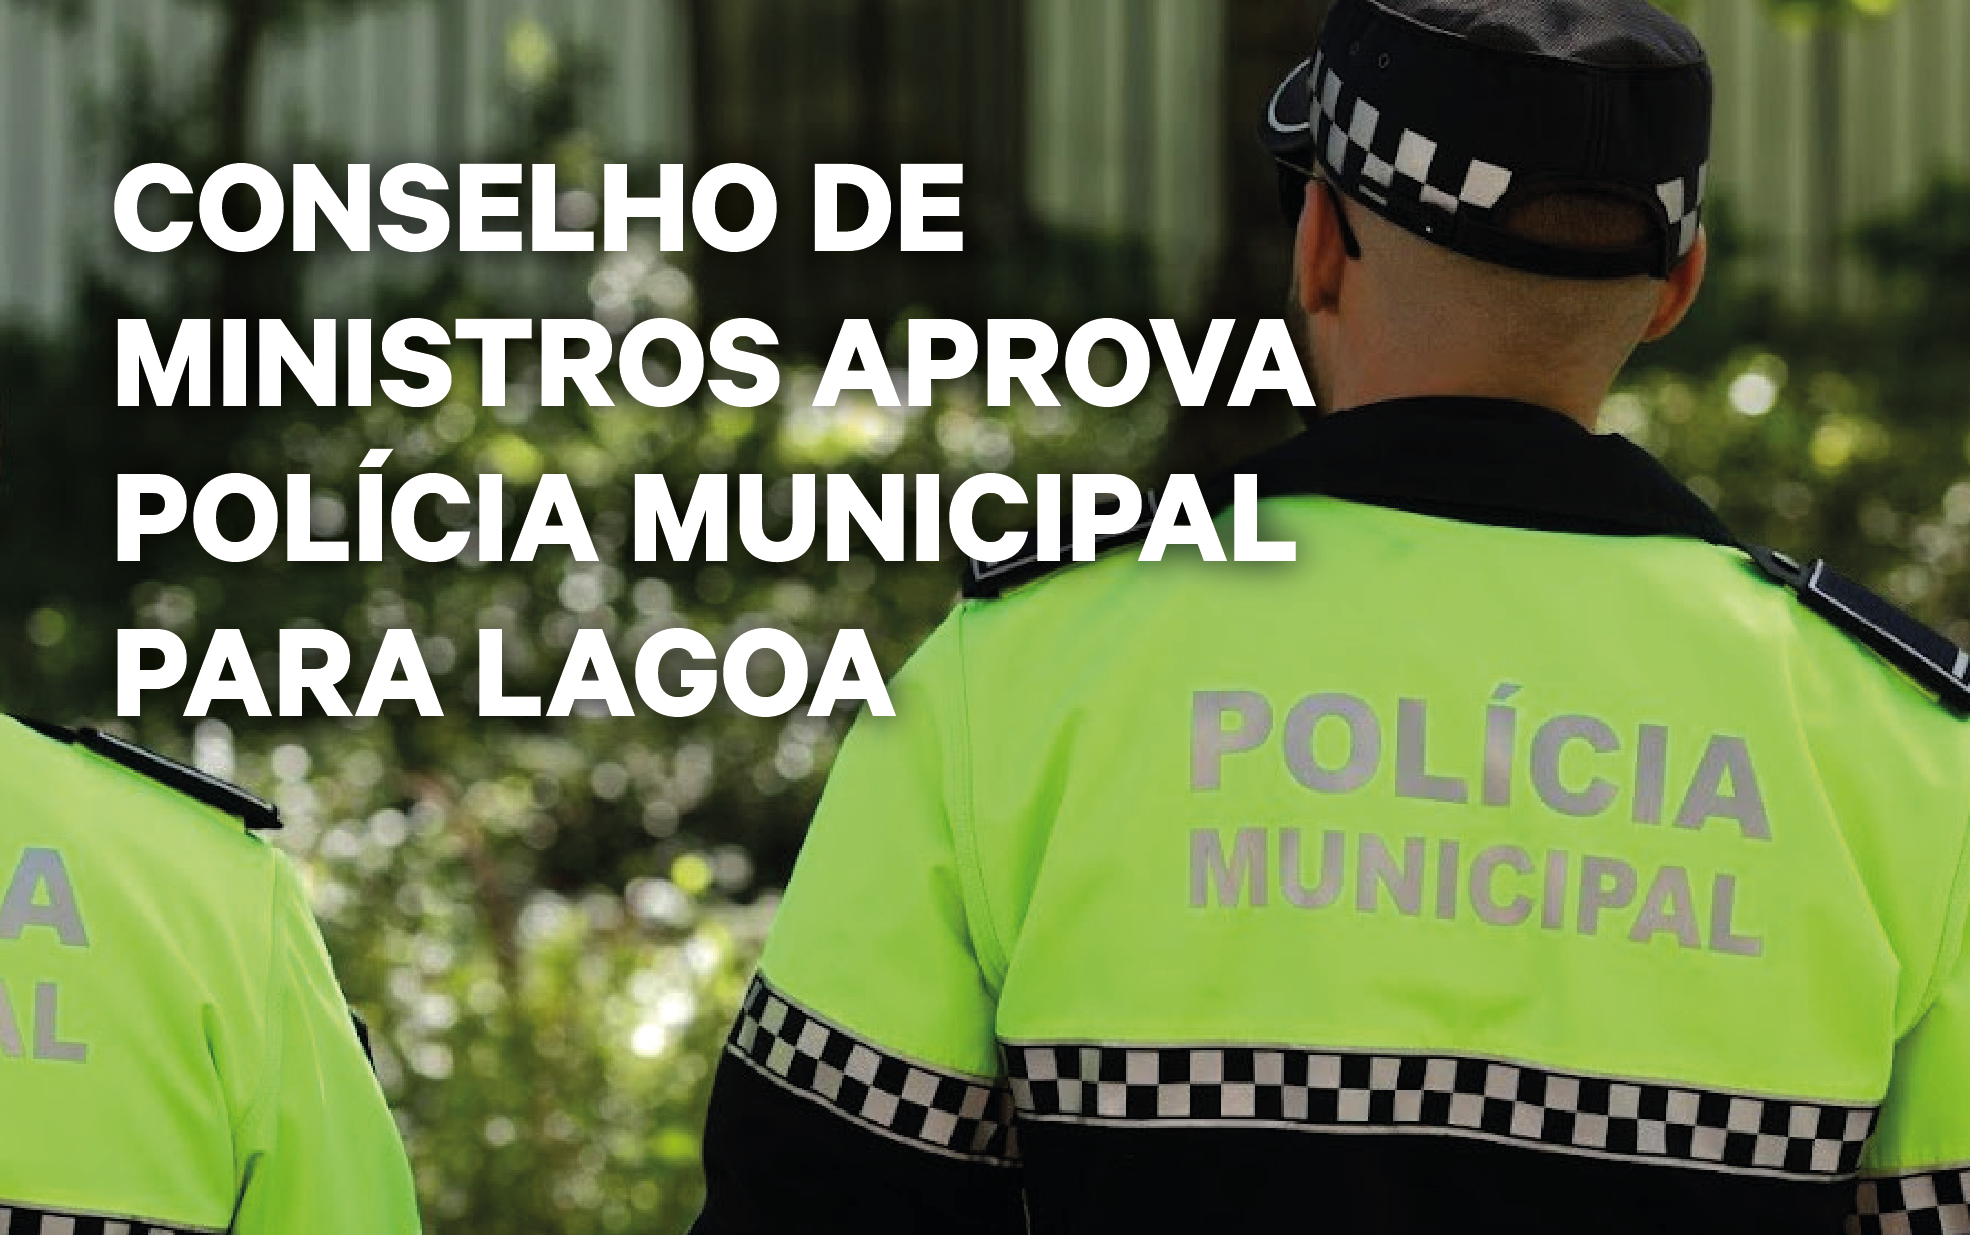 Conselho de Ministros aprova Polícia Municipal para Lagoa